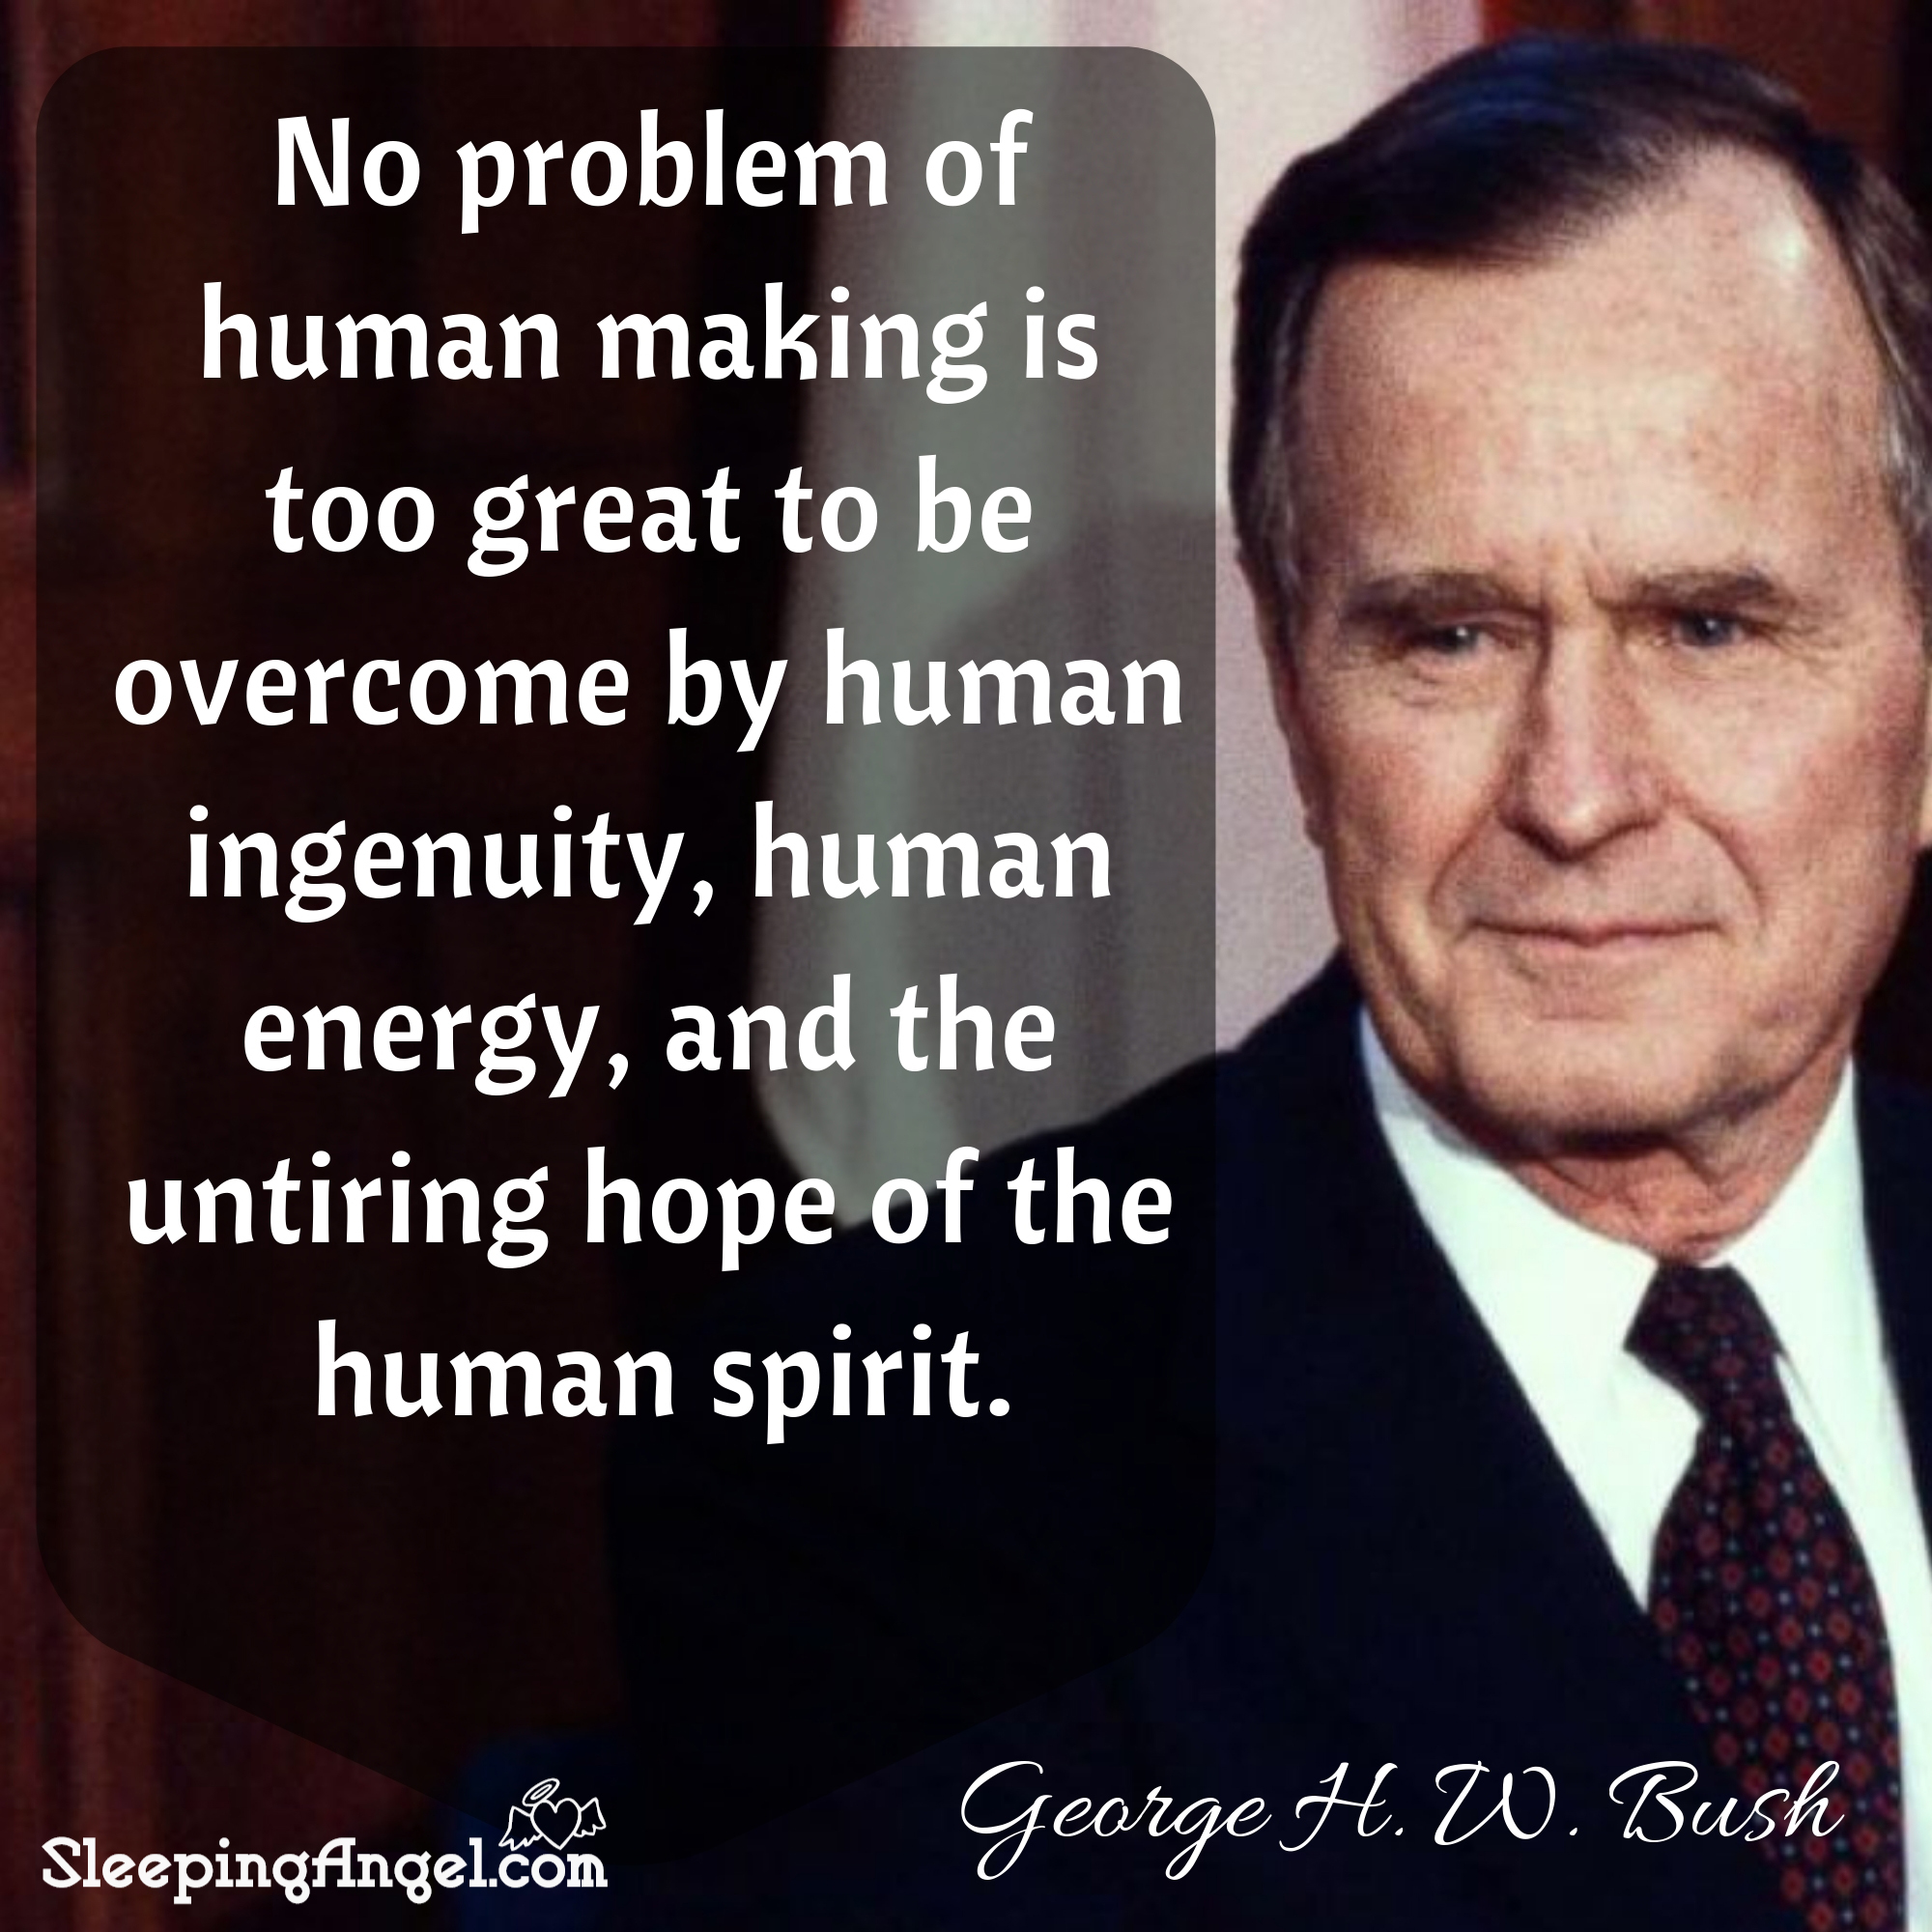 George H. W. Bush Quote